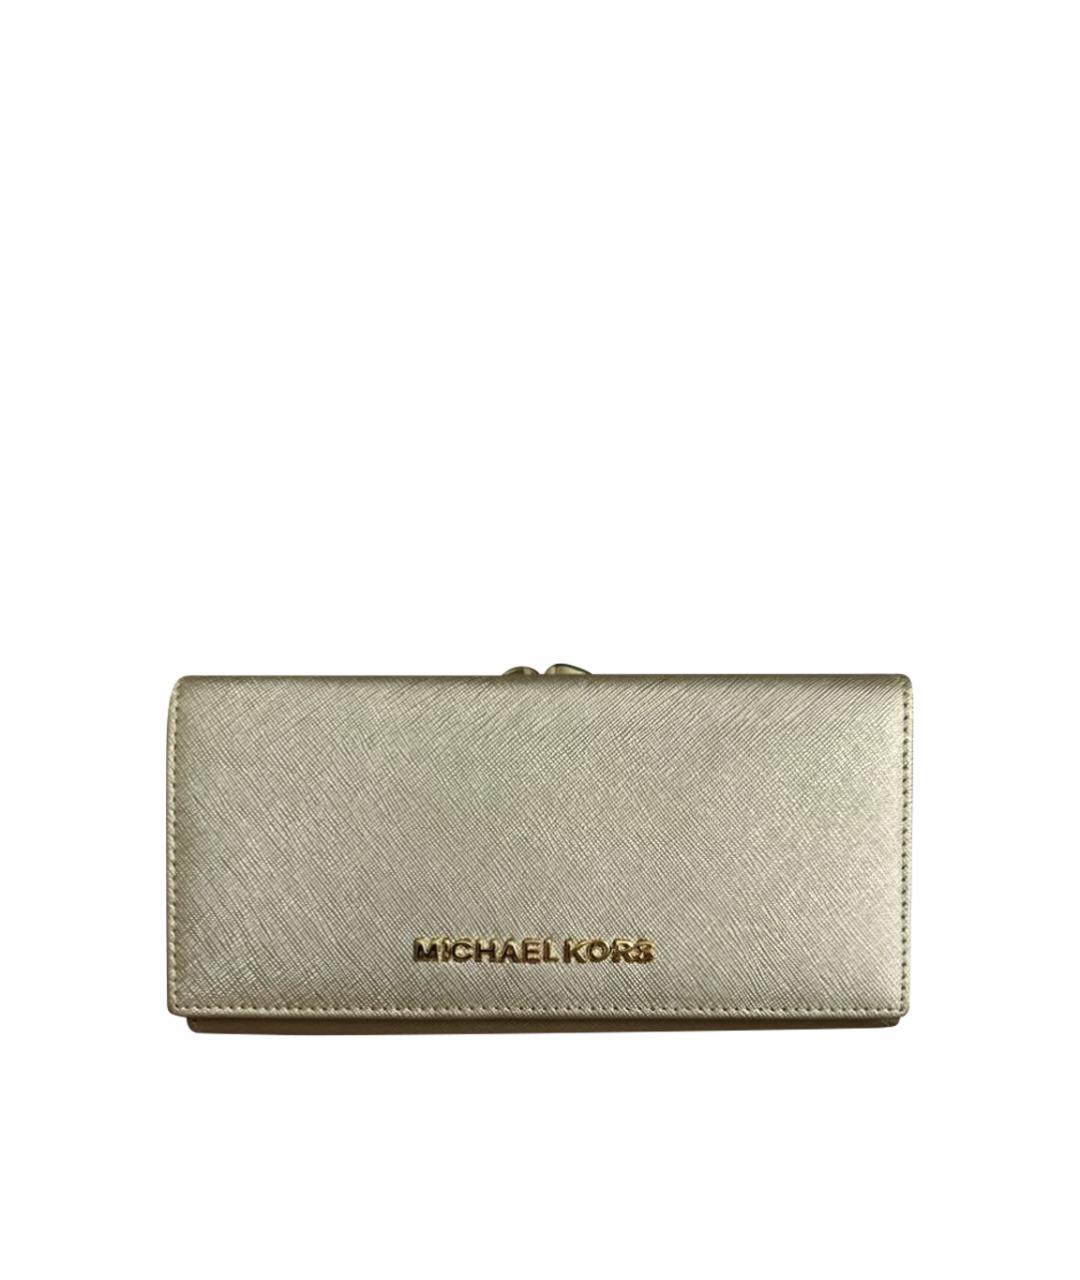 MICHAEL KORS Золотой кожаный кошелек, фото 1